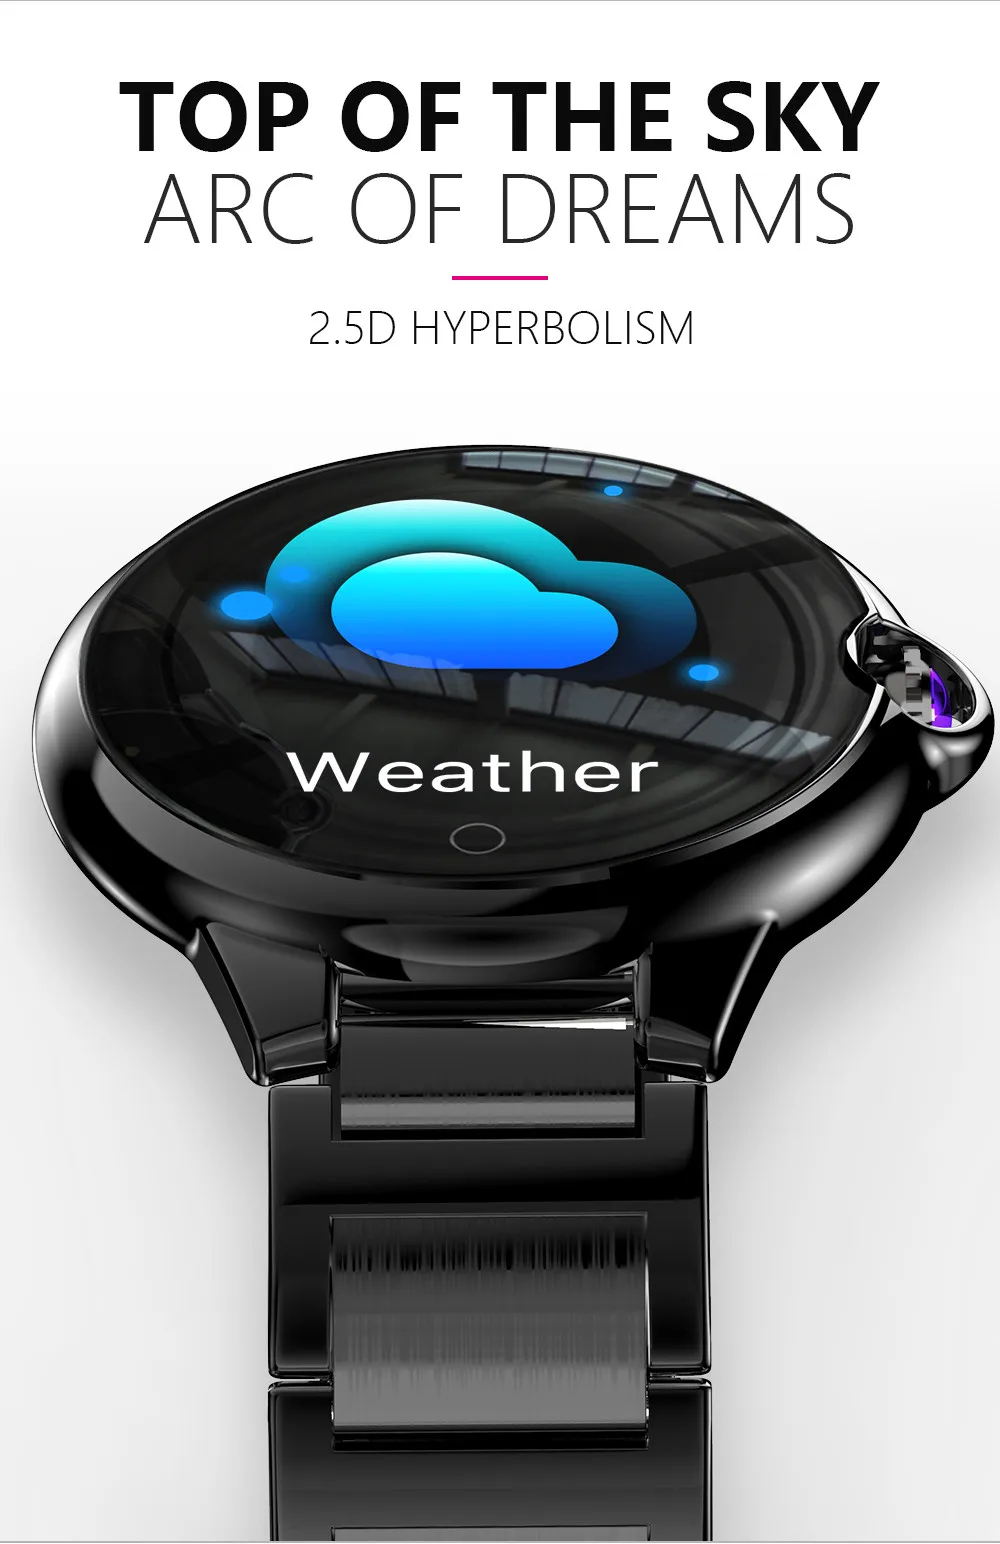 AMYNIKEER Смарт-часы DR88 деловые умные часы Мониторинг Артериального Давления пульса 2.5D гиперболический экран долгий срок службы батареи